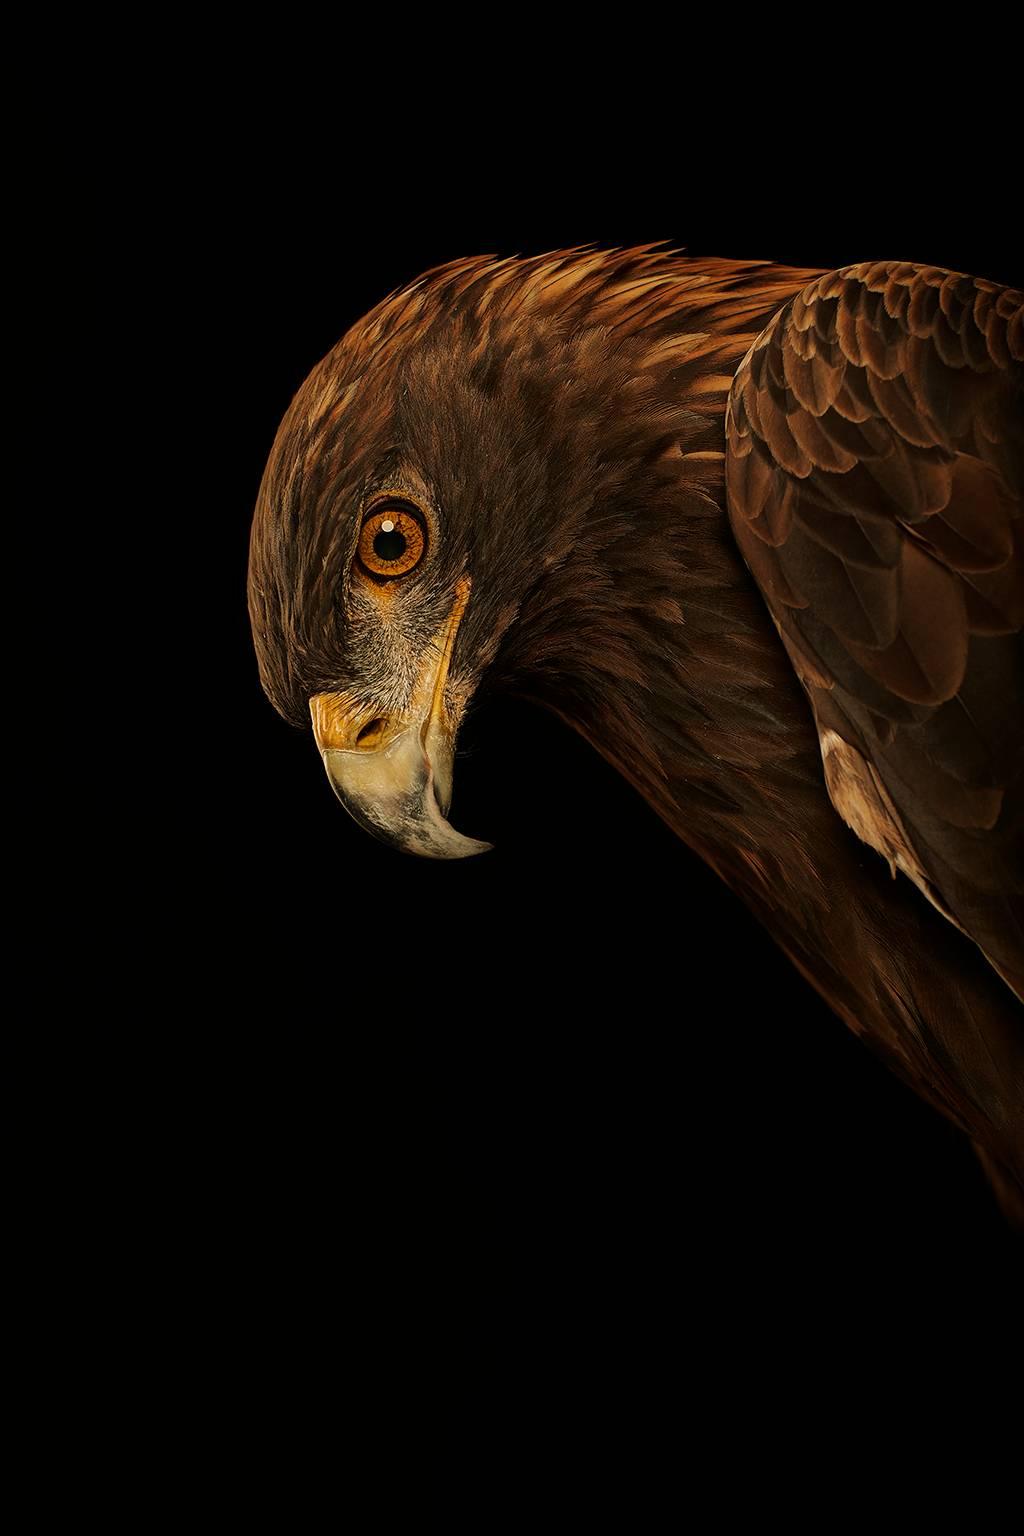 Chris Gordaneer Color Photograph - Birds of Prey Golden Eagle No.5